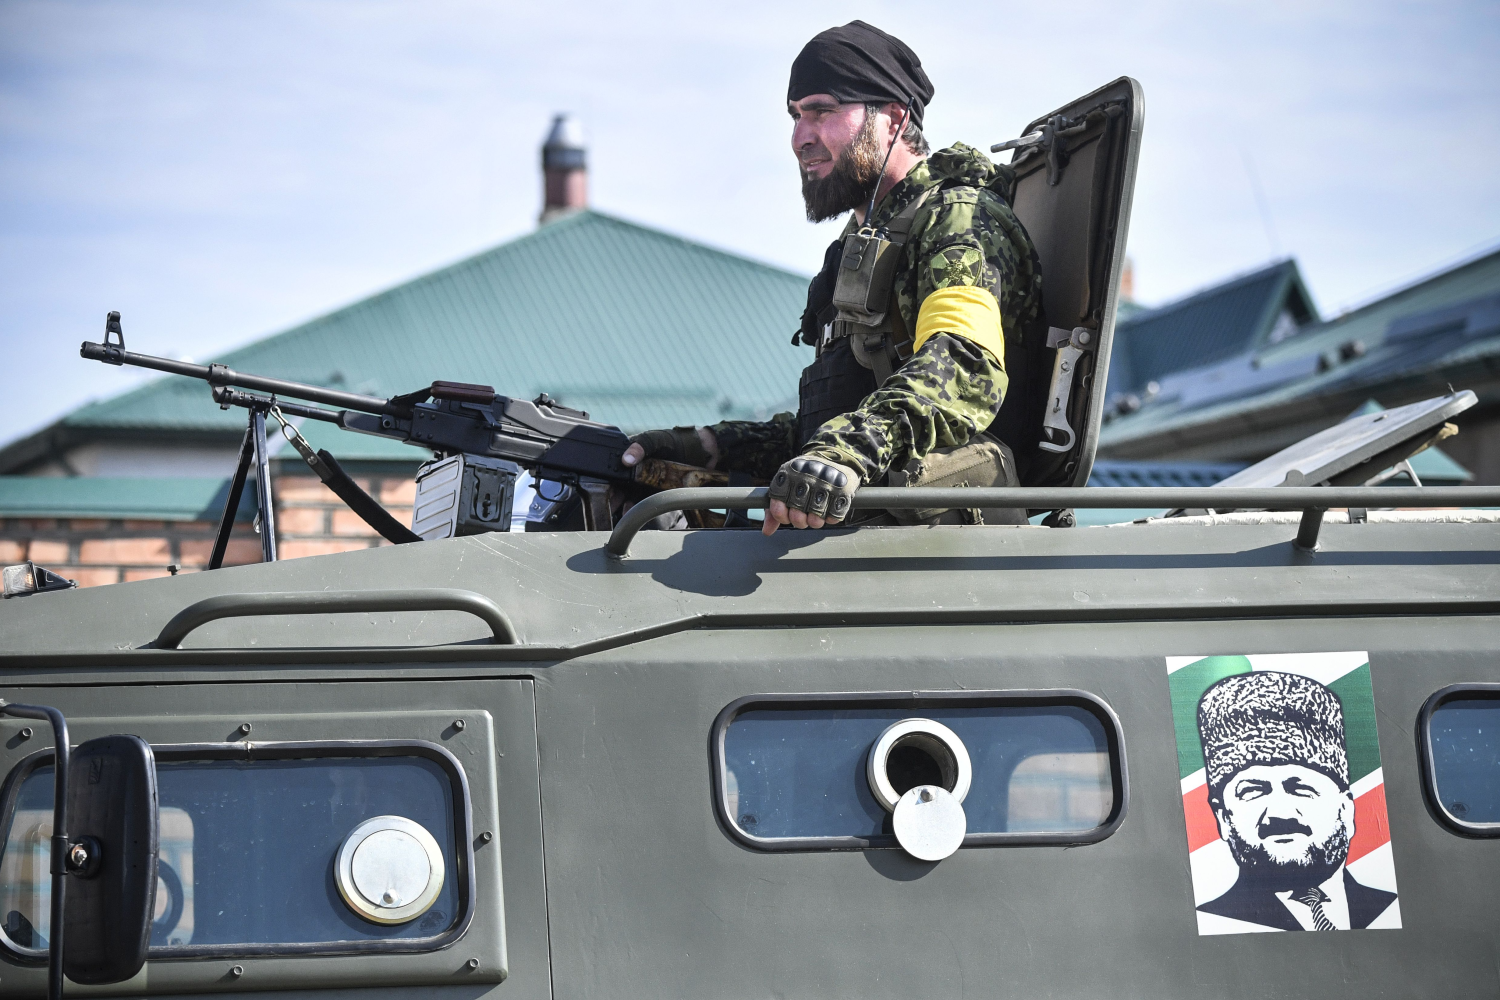 Ουκρανία: Νέες δυνάμεις Τσετσένων εθελοντών έφτασαν στο μέτωπο